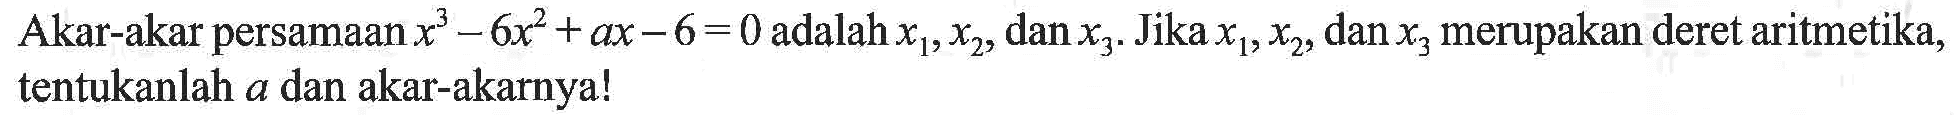 Akar-akar persamaan x^3+6x^2+ax-6=0 adalah x1,x2 dan x3. Jika x1,x2, dan x3 merupakan deret aritmetika, tentukanlah a dan akar-akarnya!